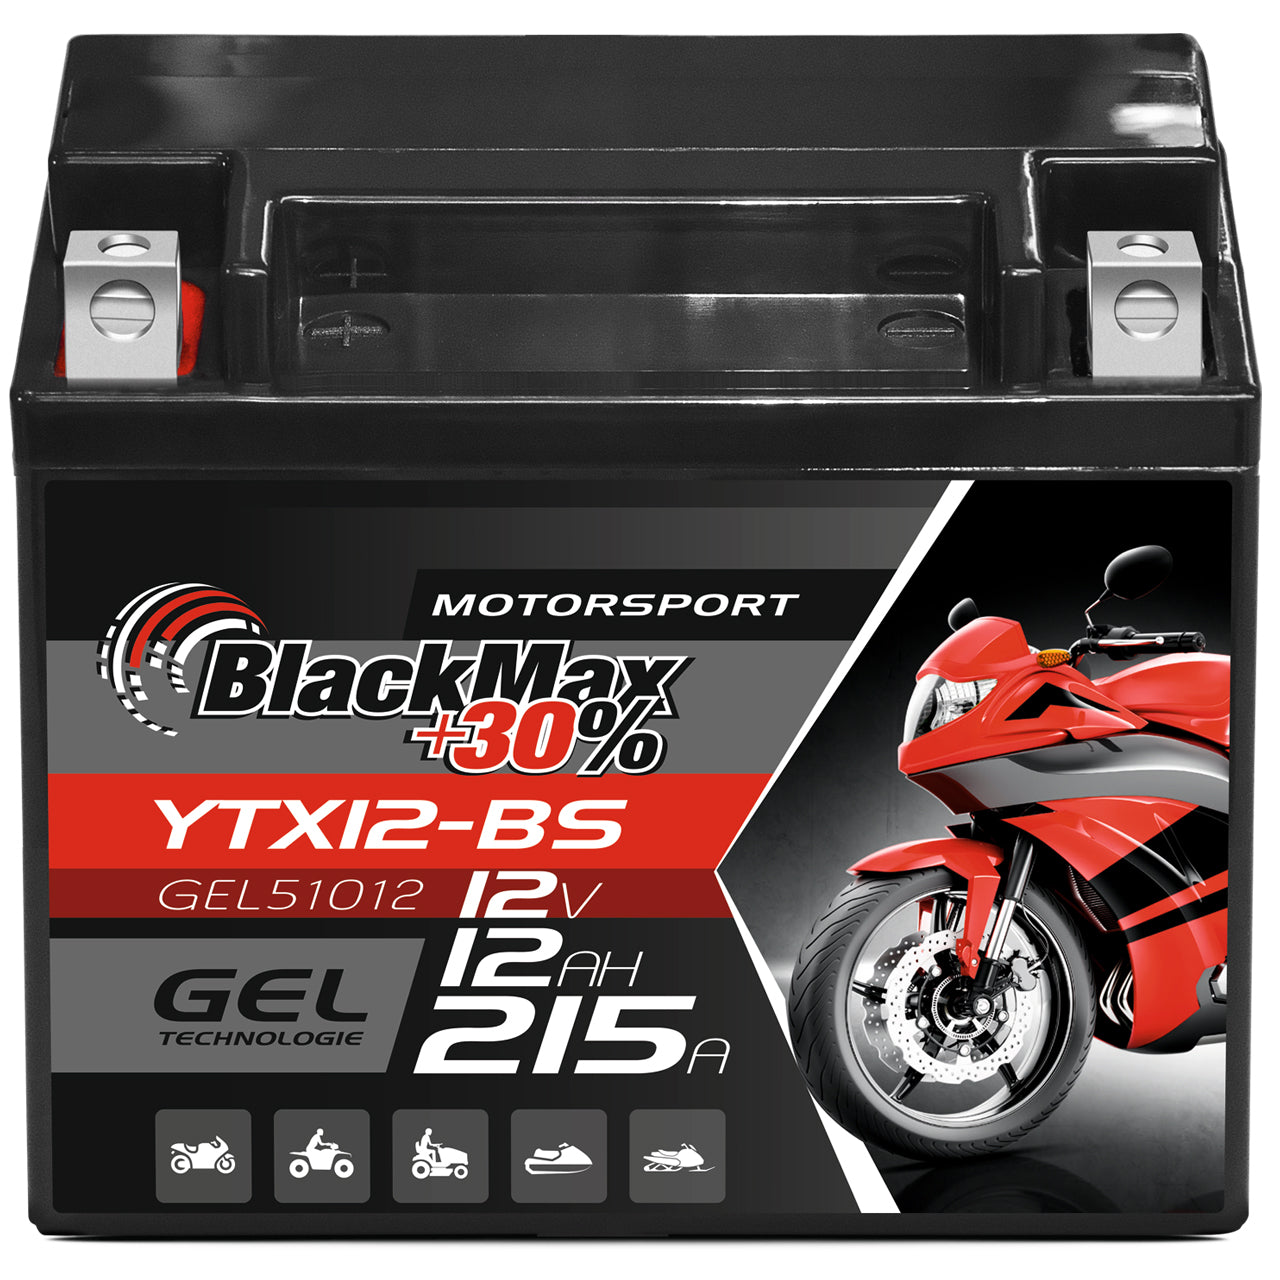 HeyVolt BIKE GEL Motorradbatterie YTX12-BS 51012 12V 12Ah